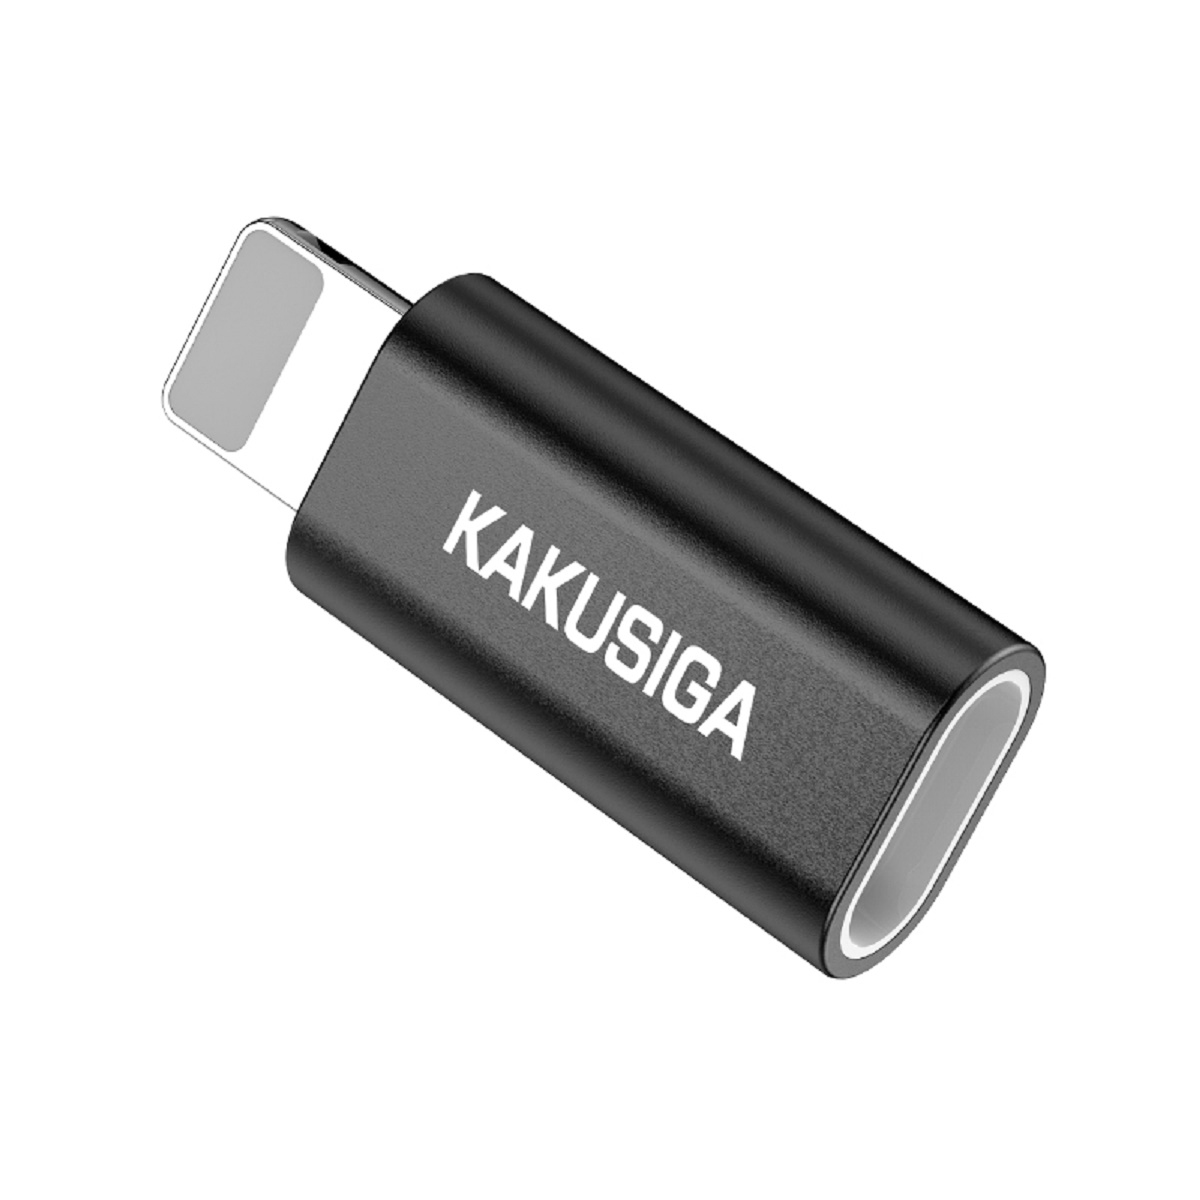 KAKU KAKU Adapter KSC-559 Chenxing USB Kabel-Adapter Schwarz - iPhone-Anschluss Micro auf Adapter, Schwarz